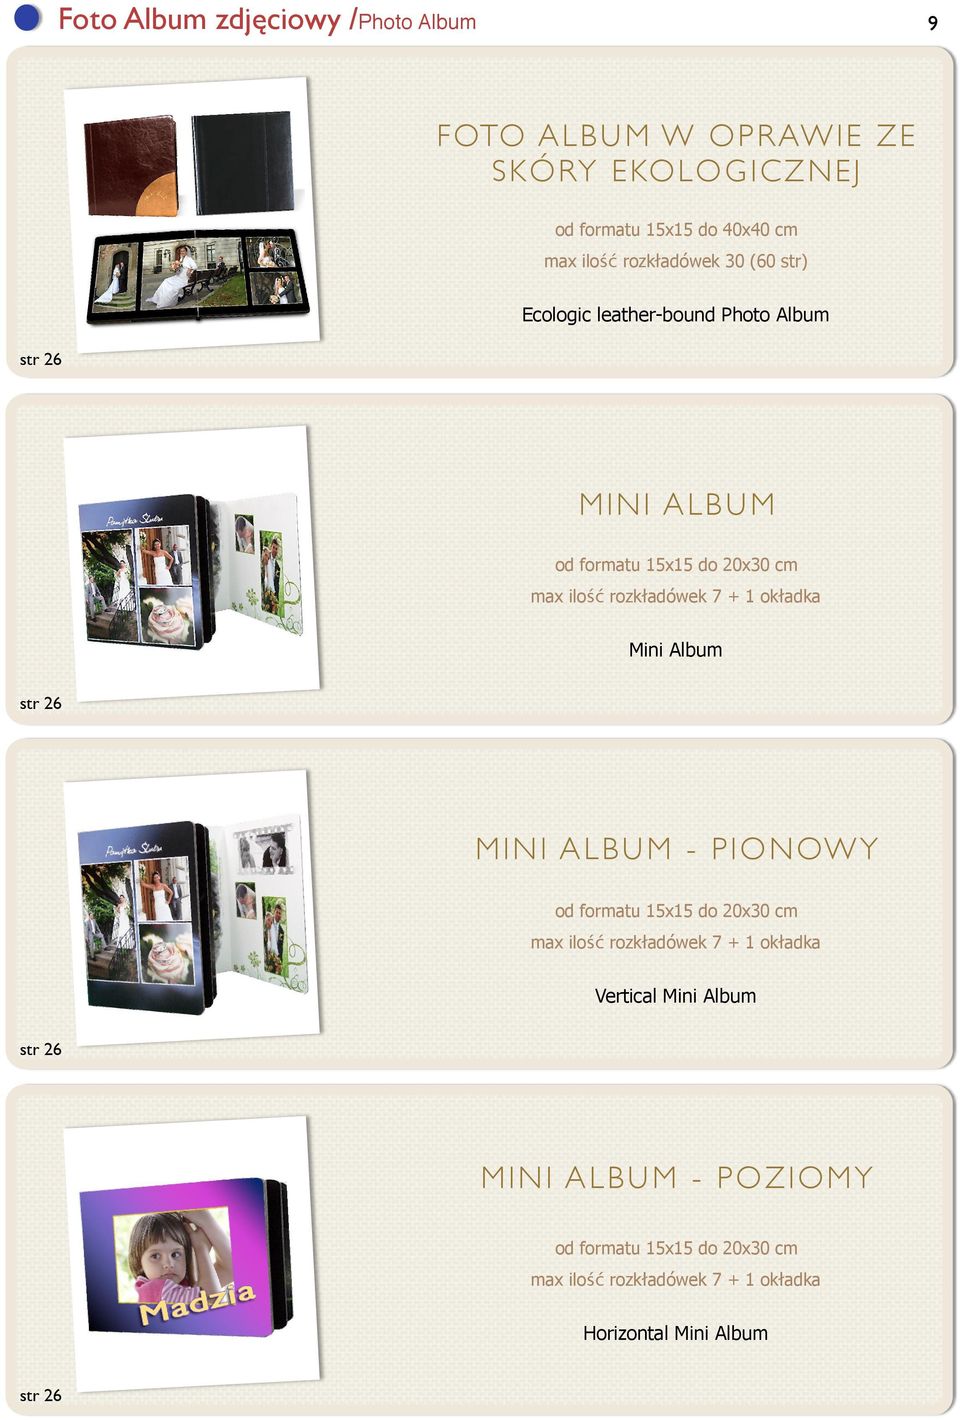 rozkładówek 7 + 1 okładka Mini Album str 26 MINI ALBUM - PIONOWY od formatu 15x15 do 20x30 cm max ilość rozkładówek 7 + 1